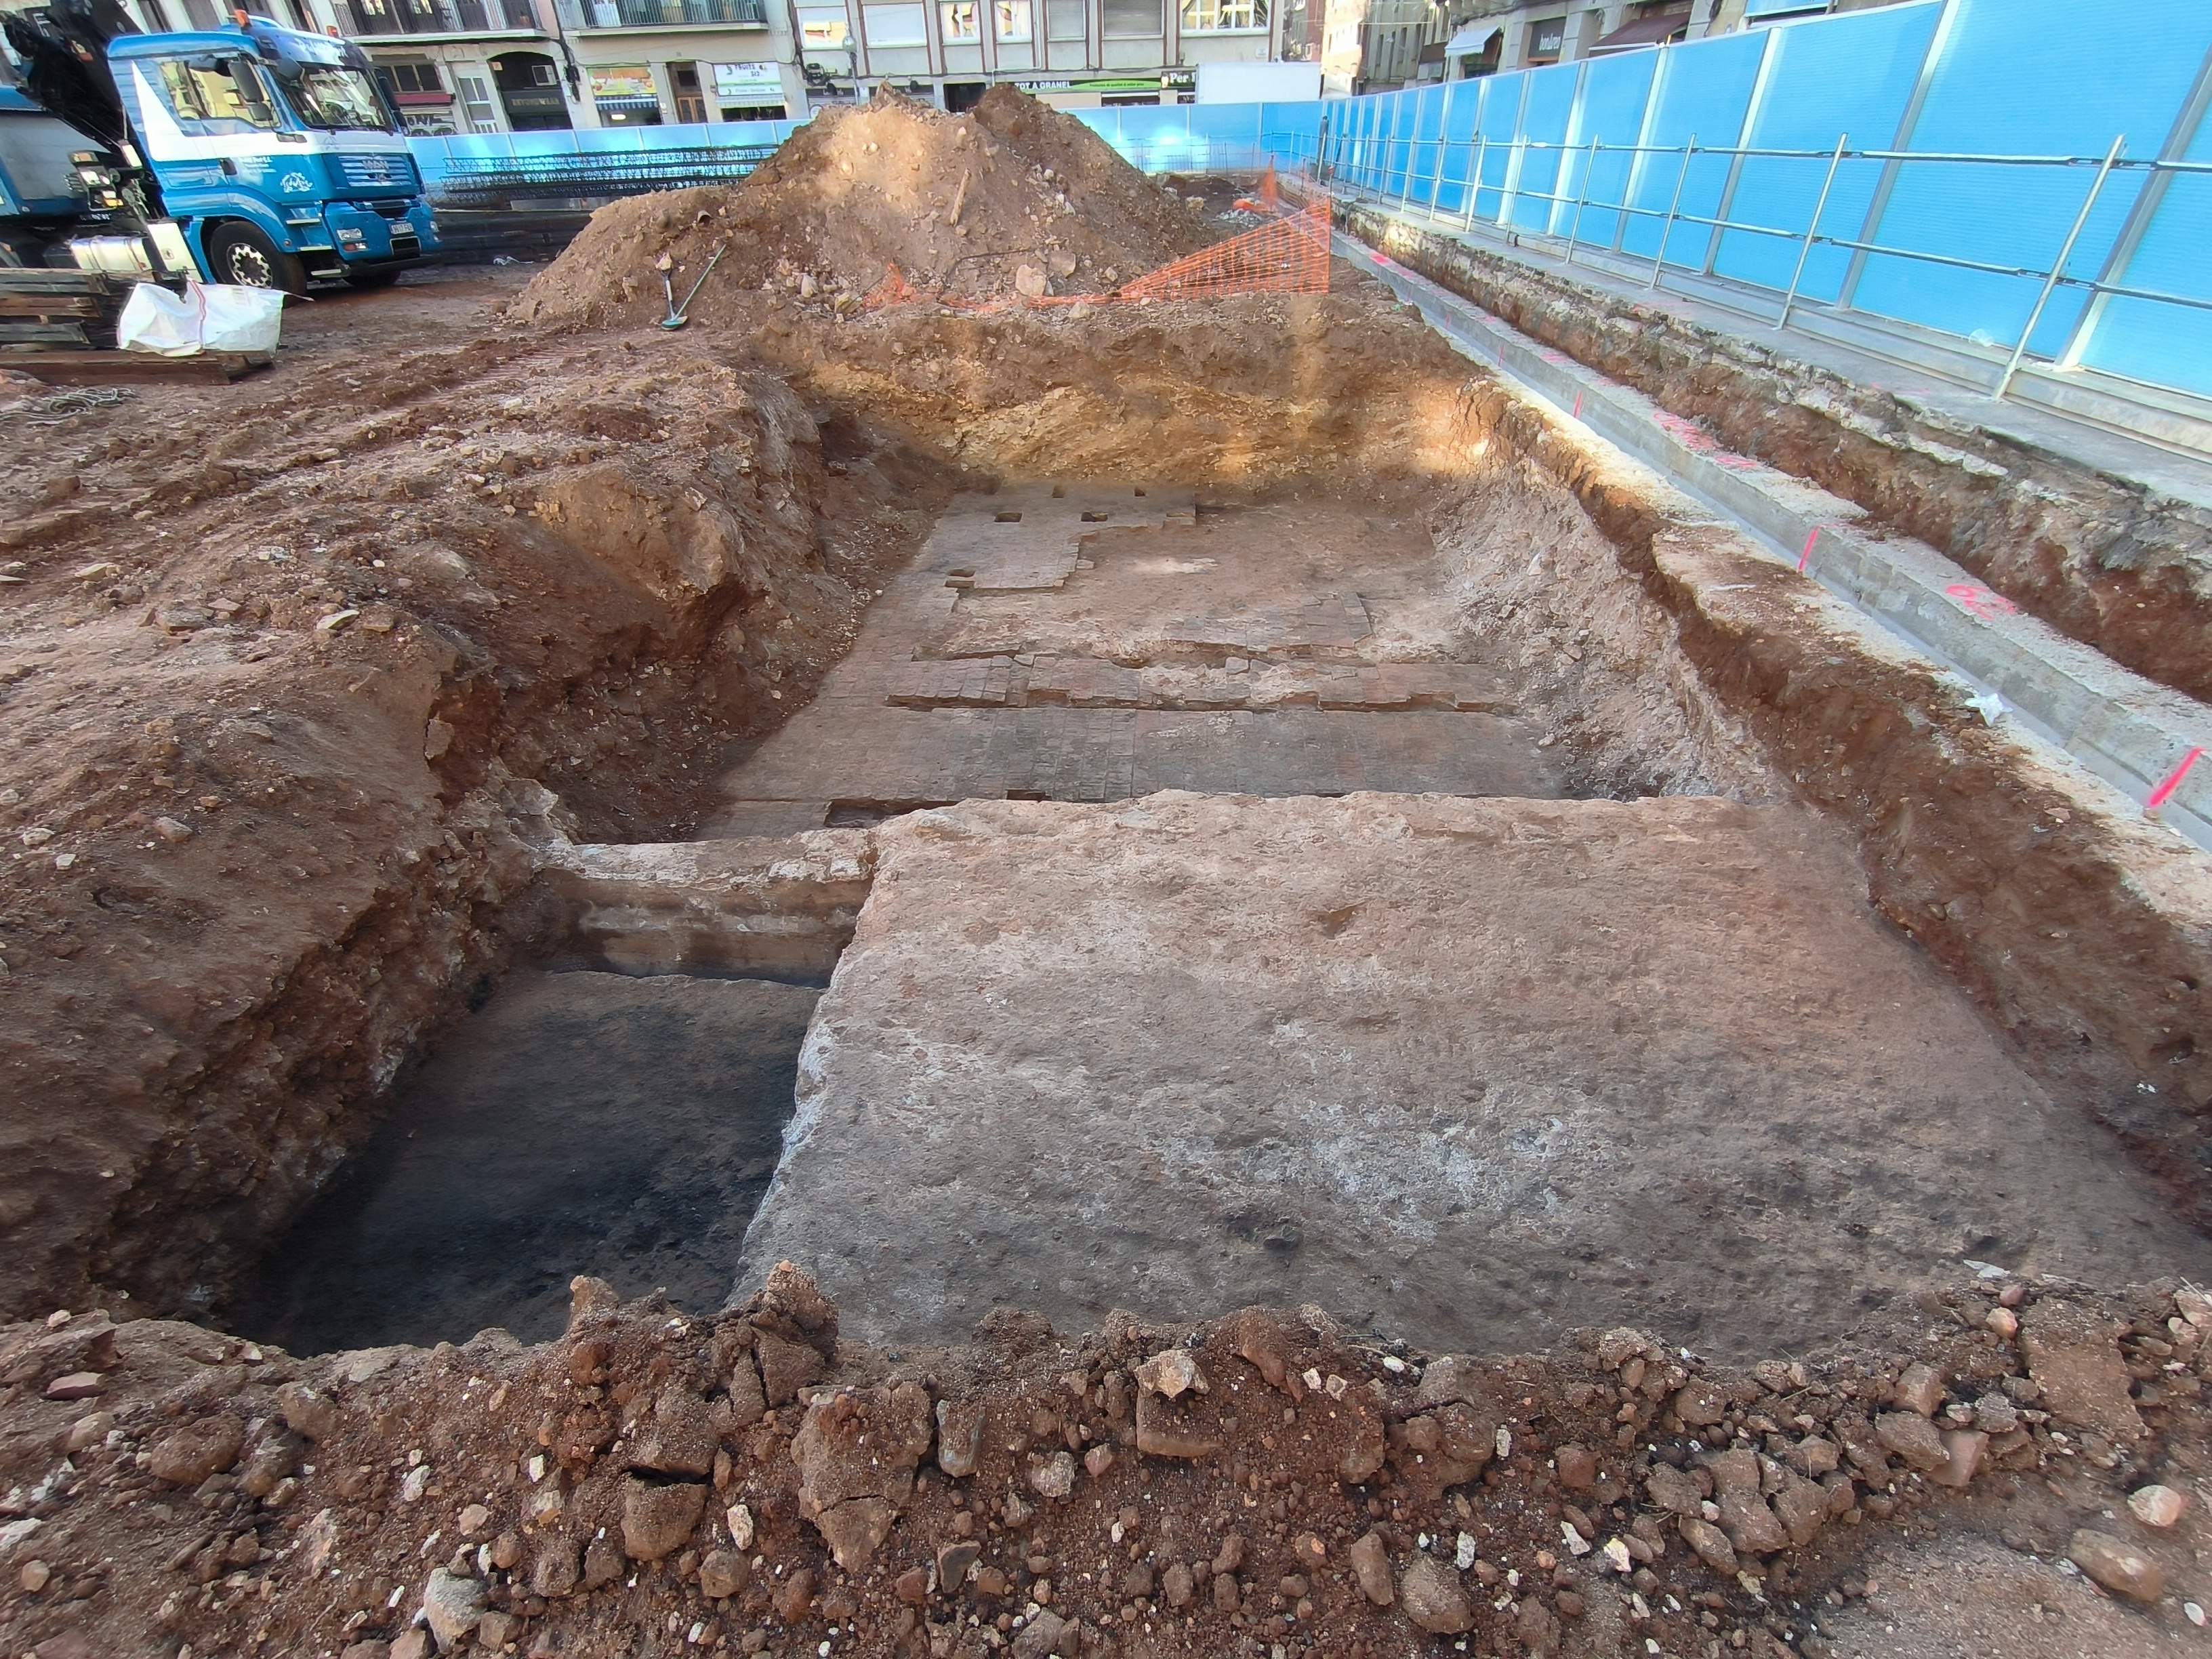 Afloran restos arqueológicos bajo el mercado de la Abaceria de Gràcia